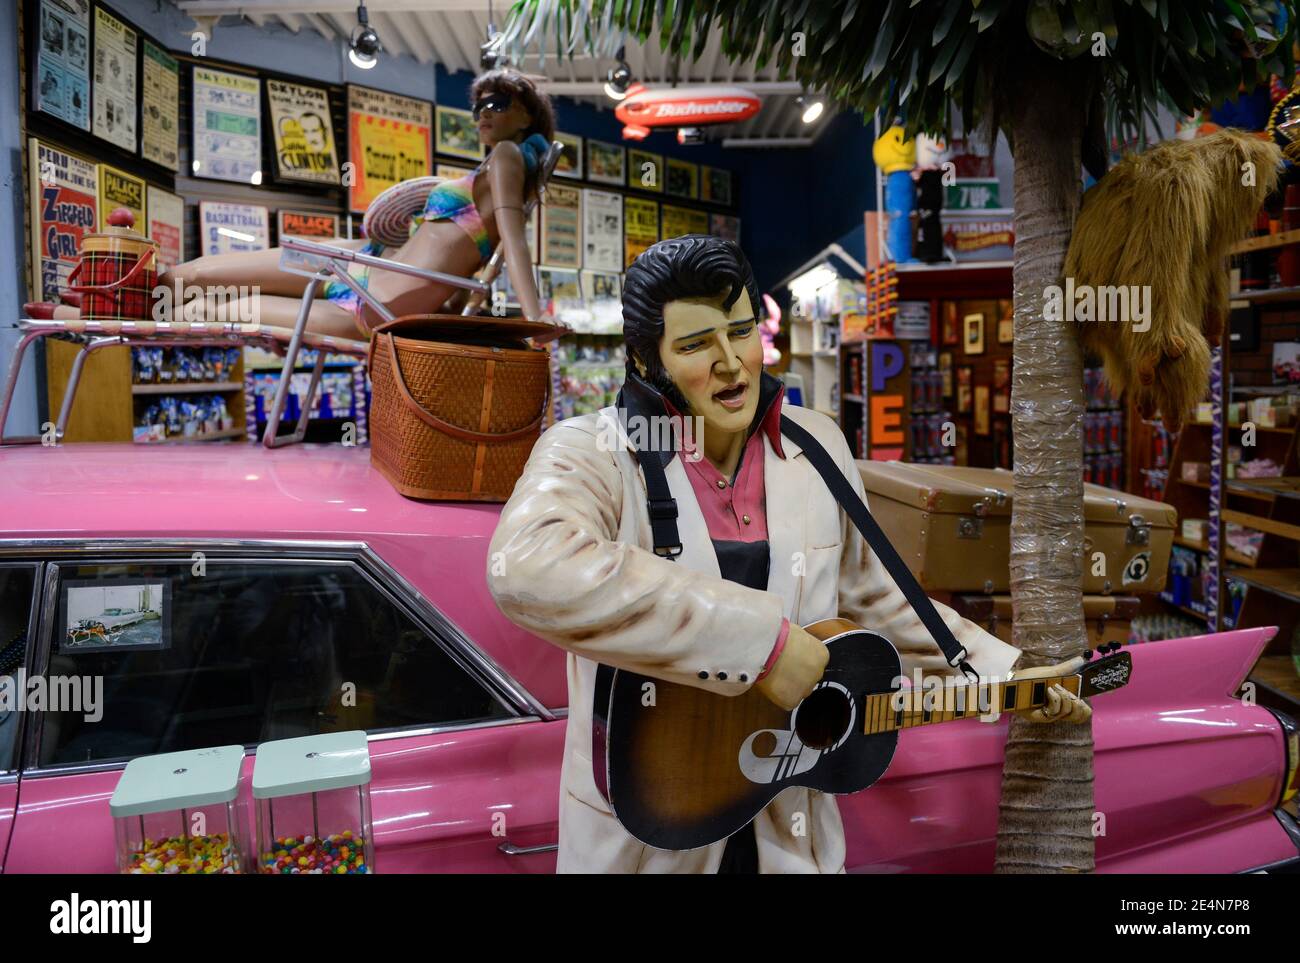 USA, Nebraska, Omaha, Elvis Presley poupée et vieille voiture Cadillac dans la boutique de souvenirs / Elvis Presley Figur und Alter GM General Motors Cadillac dans einem souvenir Laden Banque D'Images